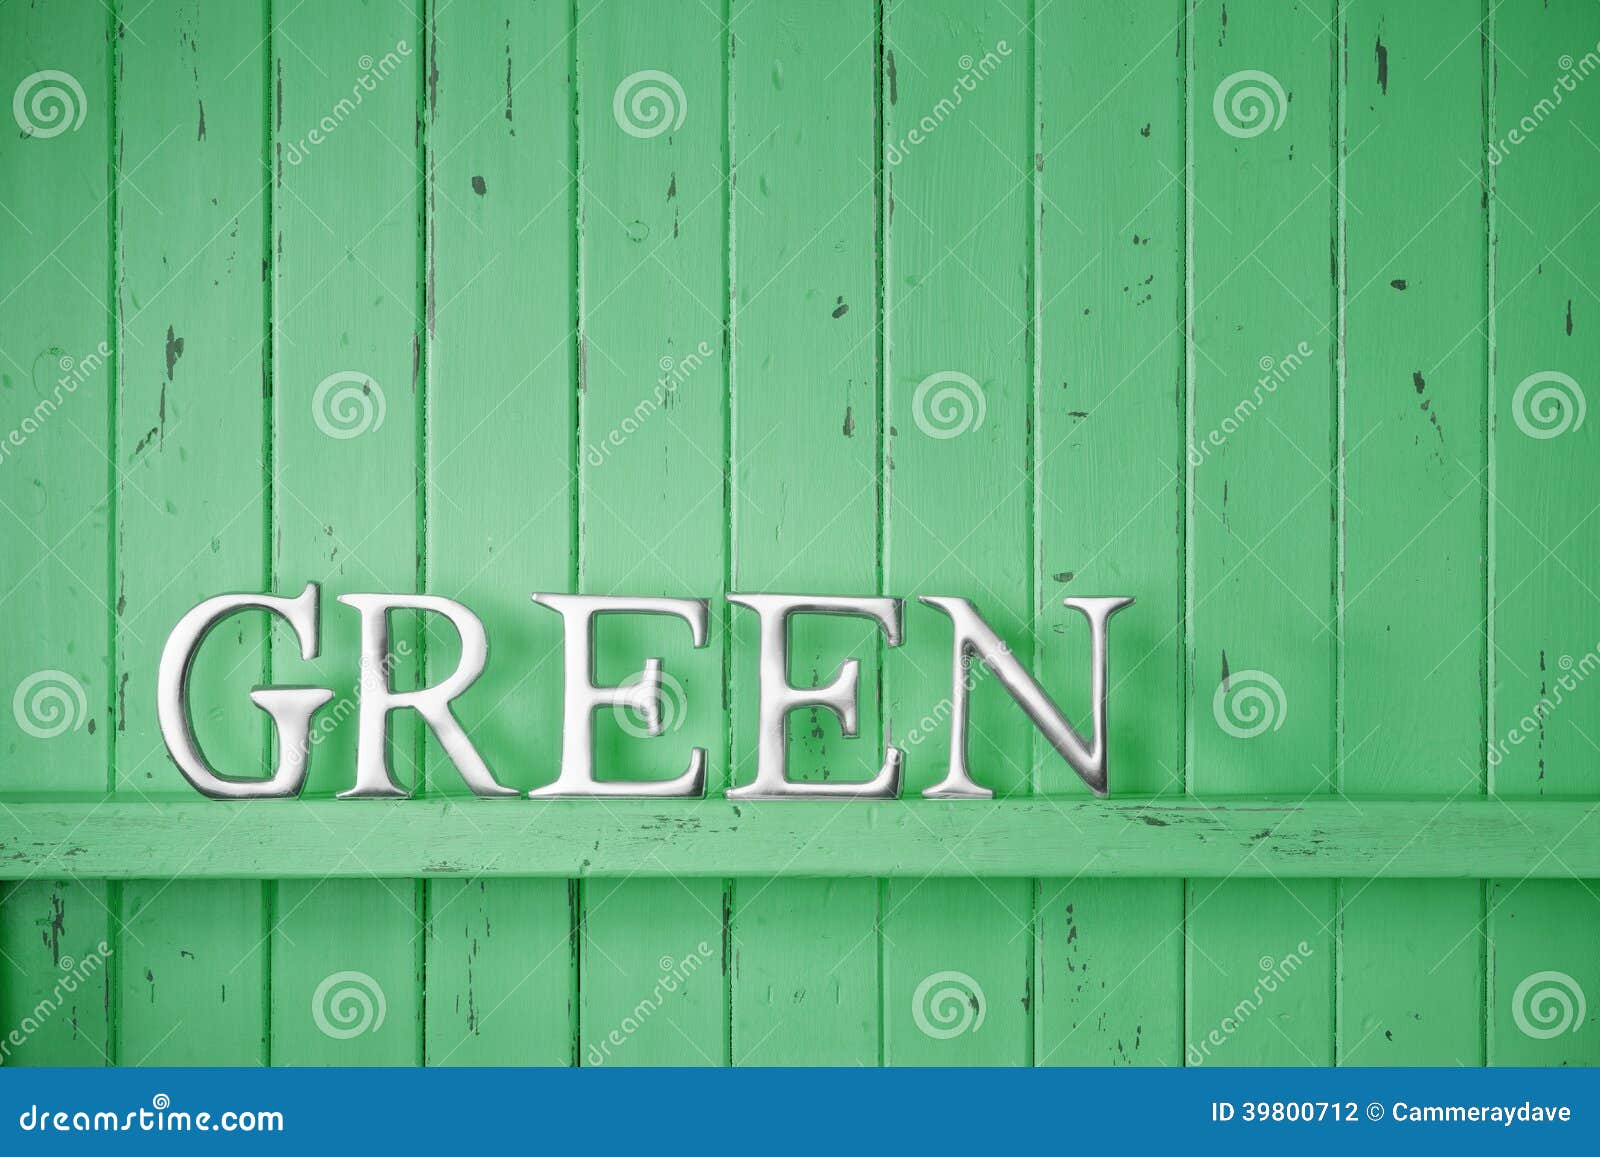 Текст в зеленой чаще. Картинка со словом зеленый. Фото зеленых слов. Слова зеленого цвета. Слова на газоне.